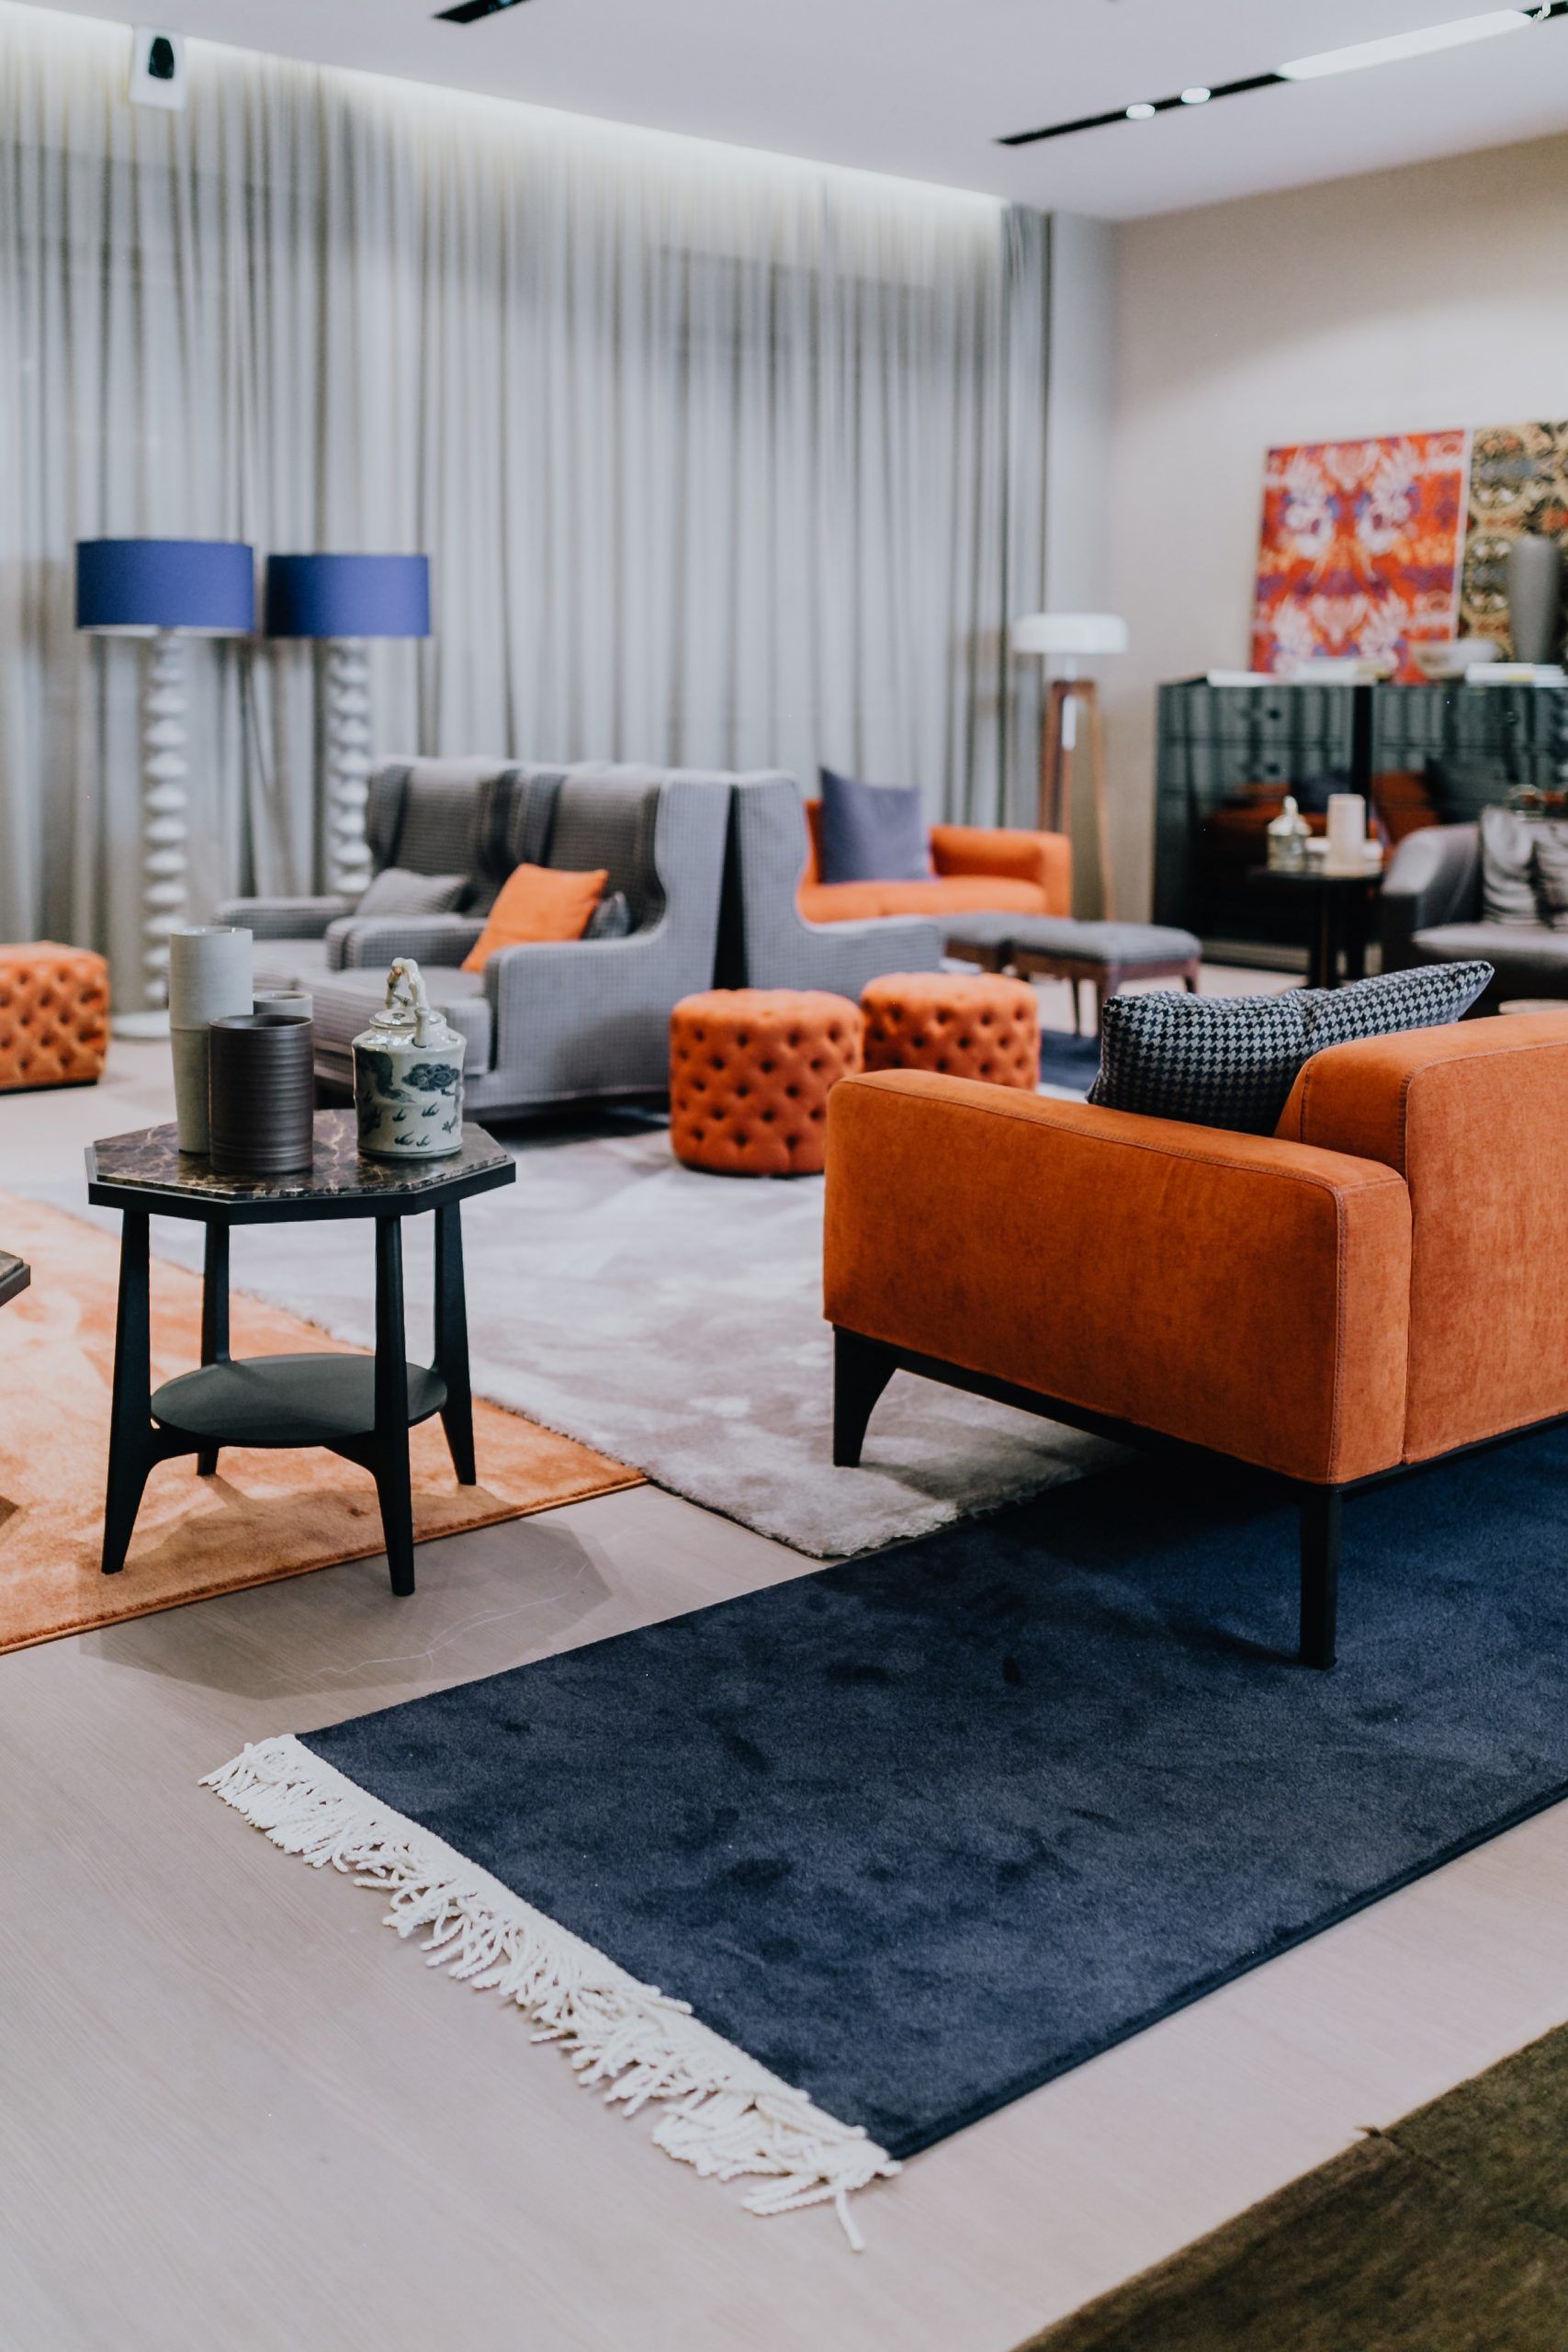 salotto moderno con tris di tappeti contemporanei Artorient per delimitare le zone conversazione